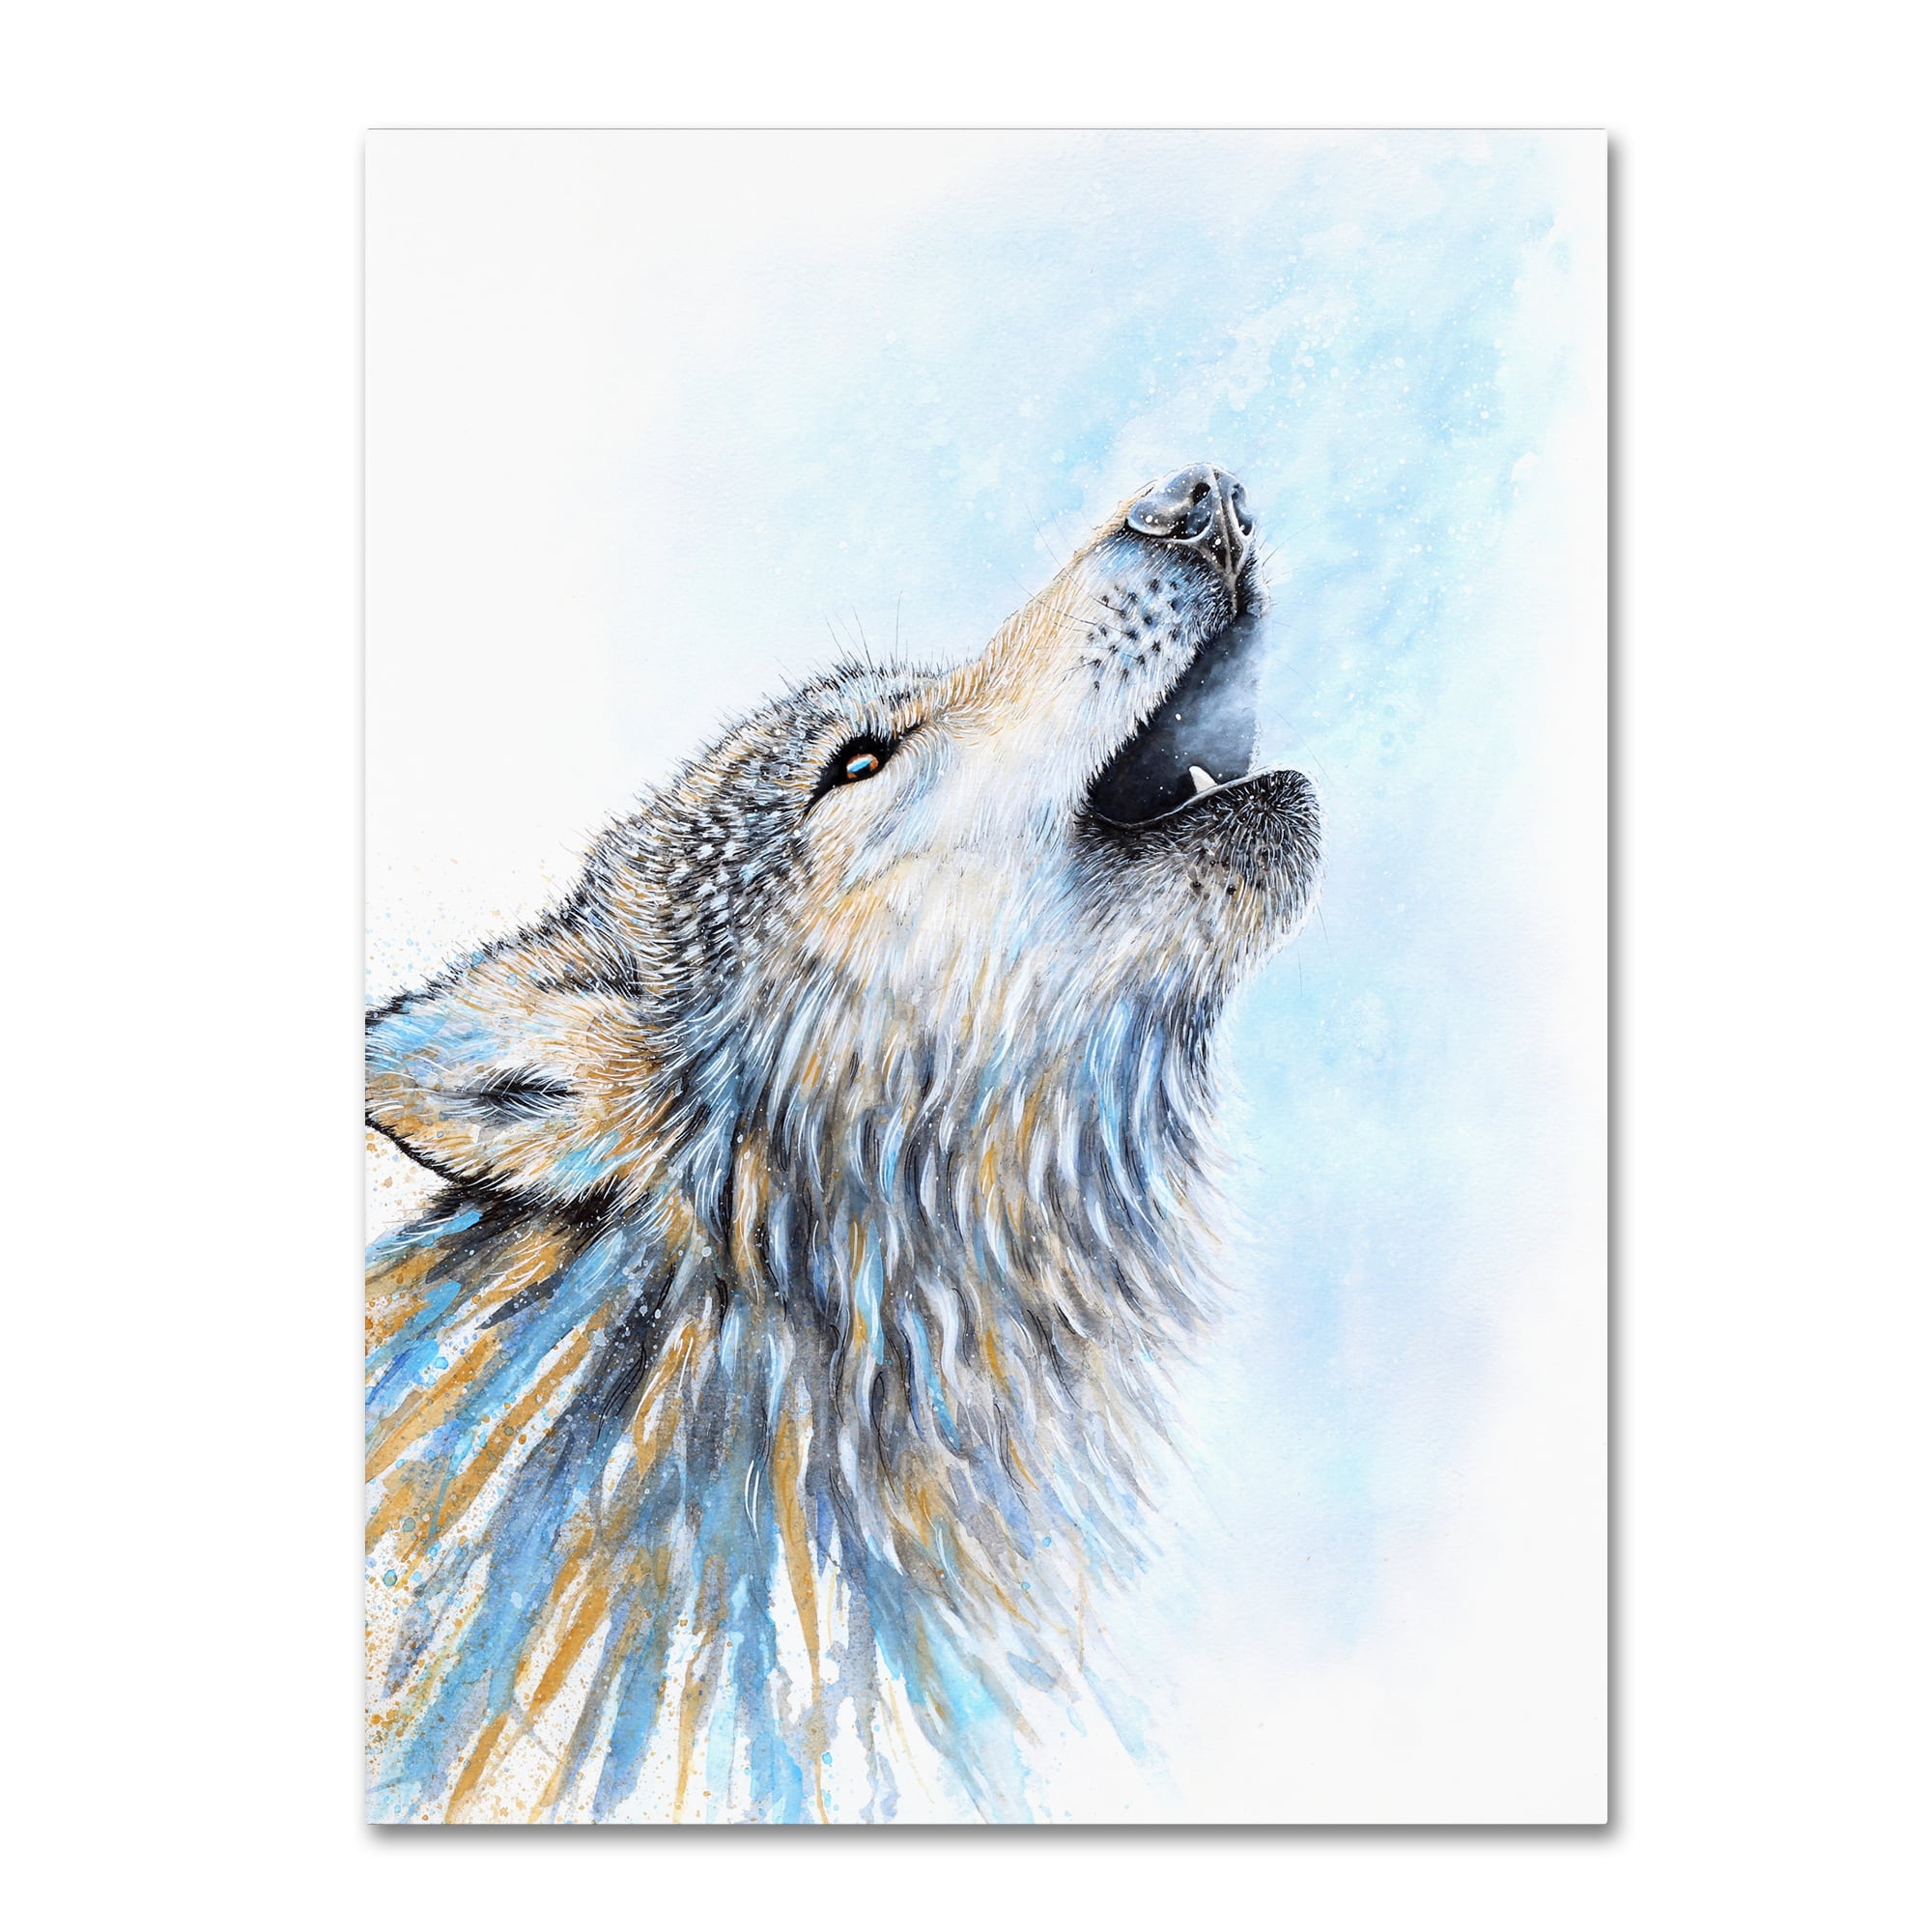 Howling Wolf Spirit Art Print Home Decor Wall Art Poster C 